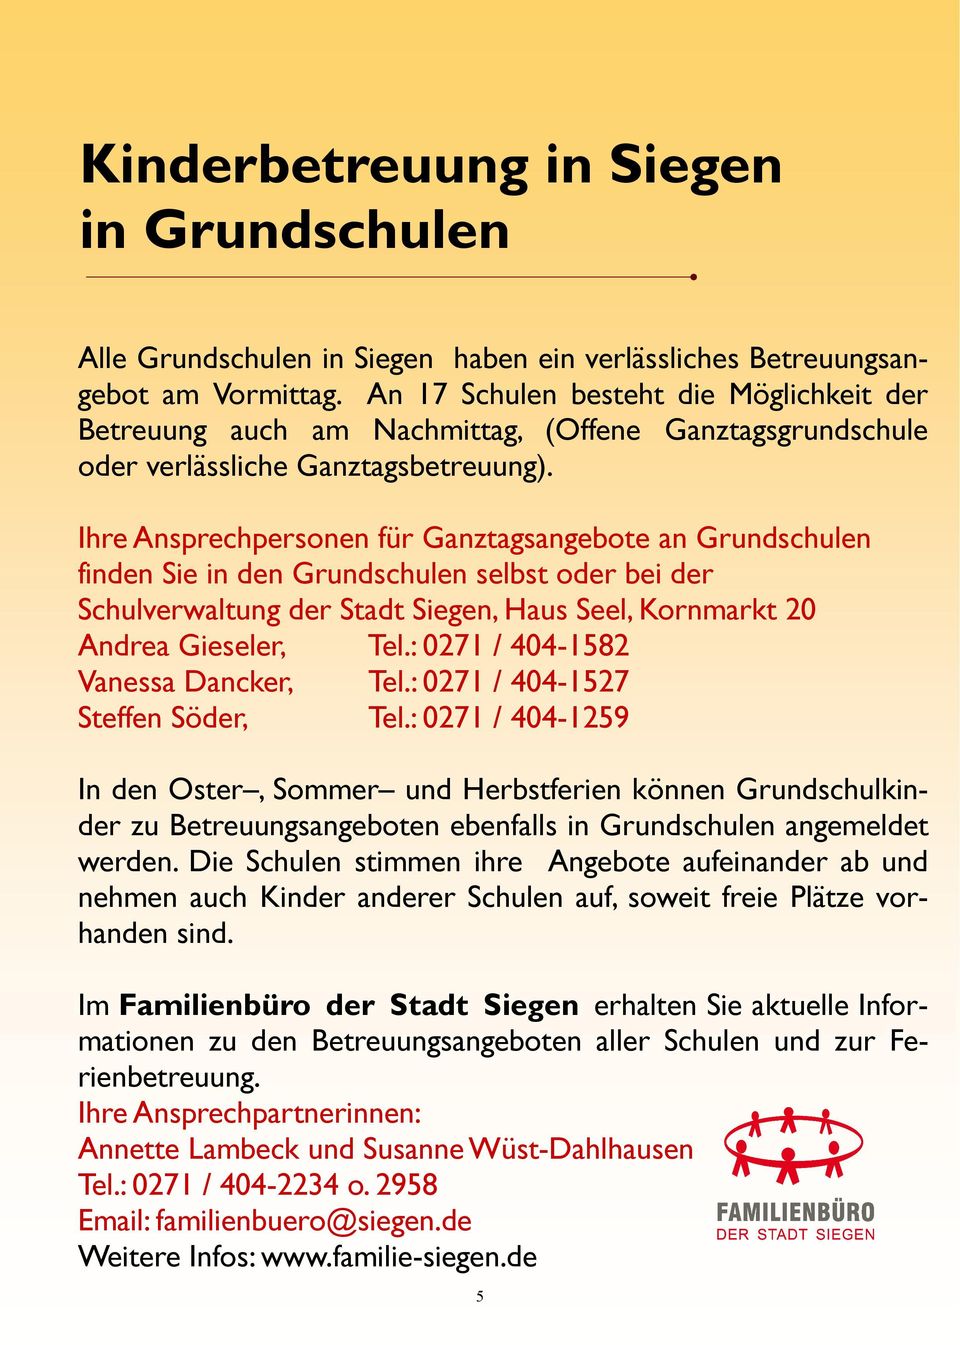 Ihre Ansprechpersonen für Ganztagsangebote an Grundschulen finden Sie in den Grundschulen selbst oder bei der Schulverwaltung der Stadt Siegen, Haus Seel, Kornmarkt 20 Andrea Gieseler, Tel.